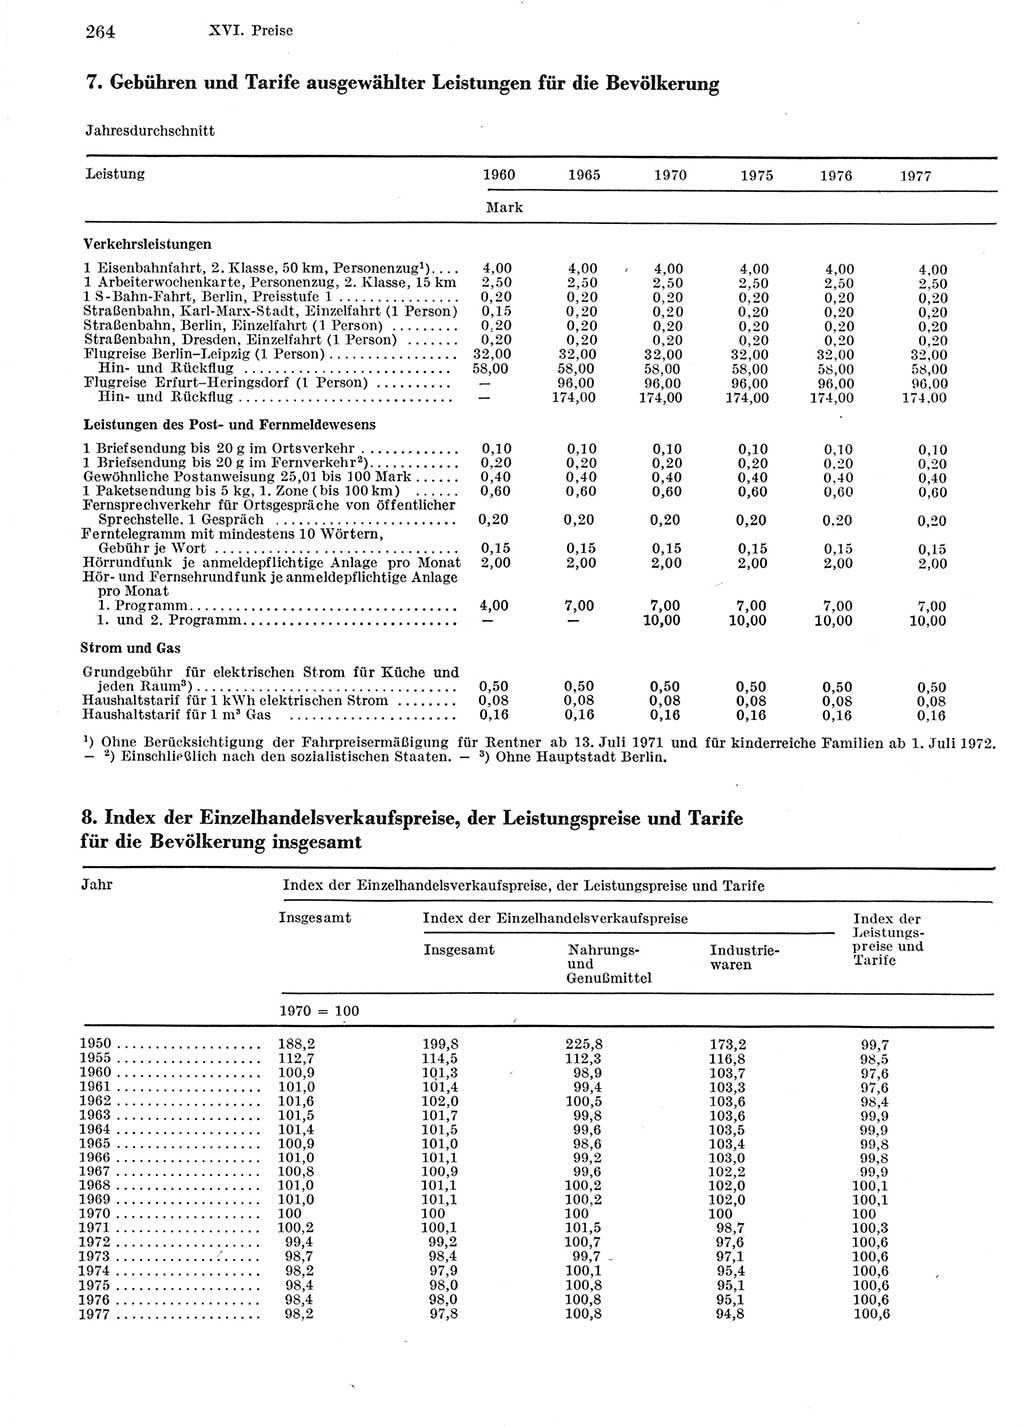 Statistisches Jahrbuch der Deutschen Demokratischen Republik (DDR) 1978, Seite 264 (Stat. Jb. DDR 1978, S. 264)